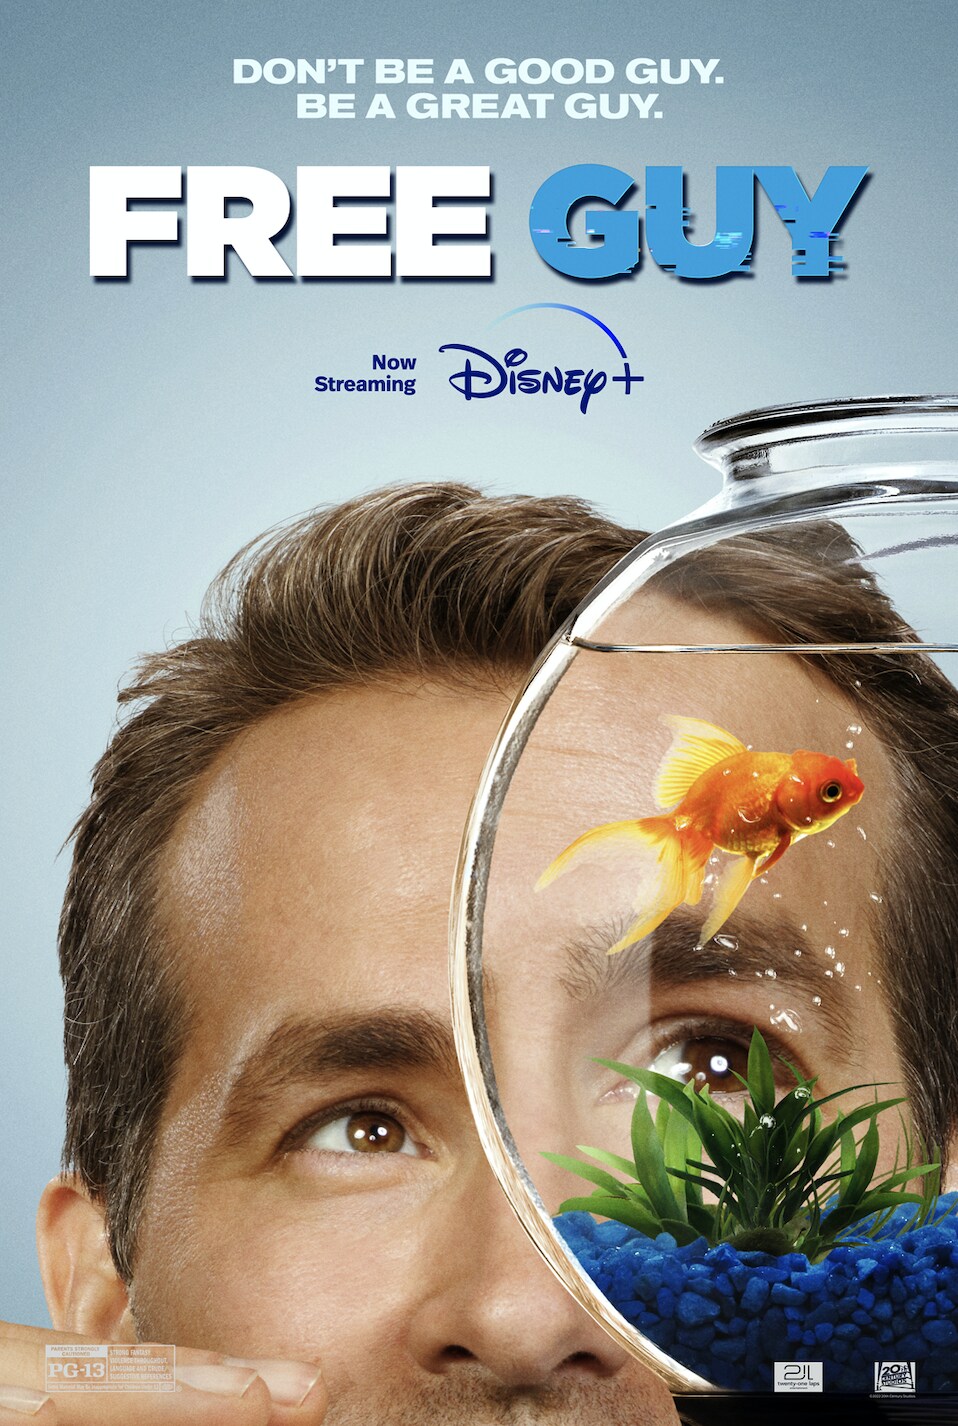 Ryan Reynolds movie Free Guy coming to Disney Plus soon